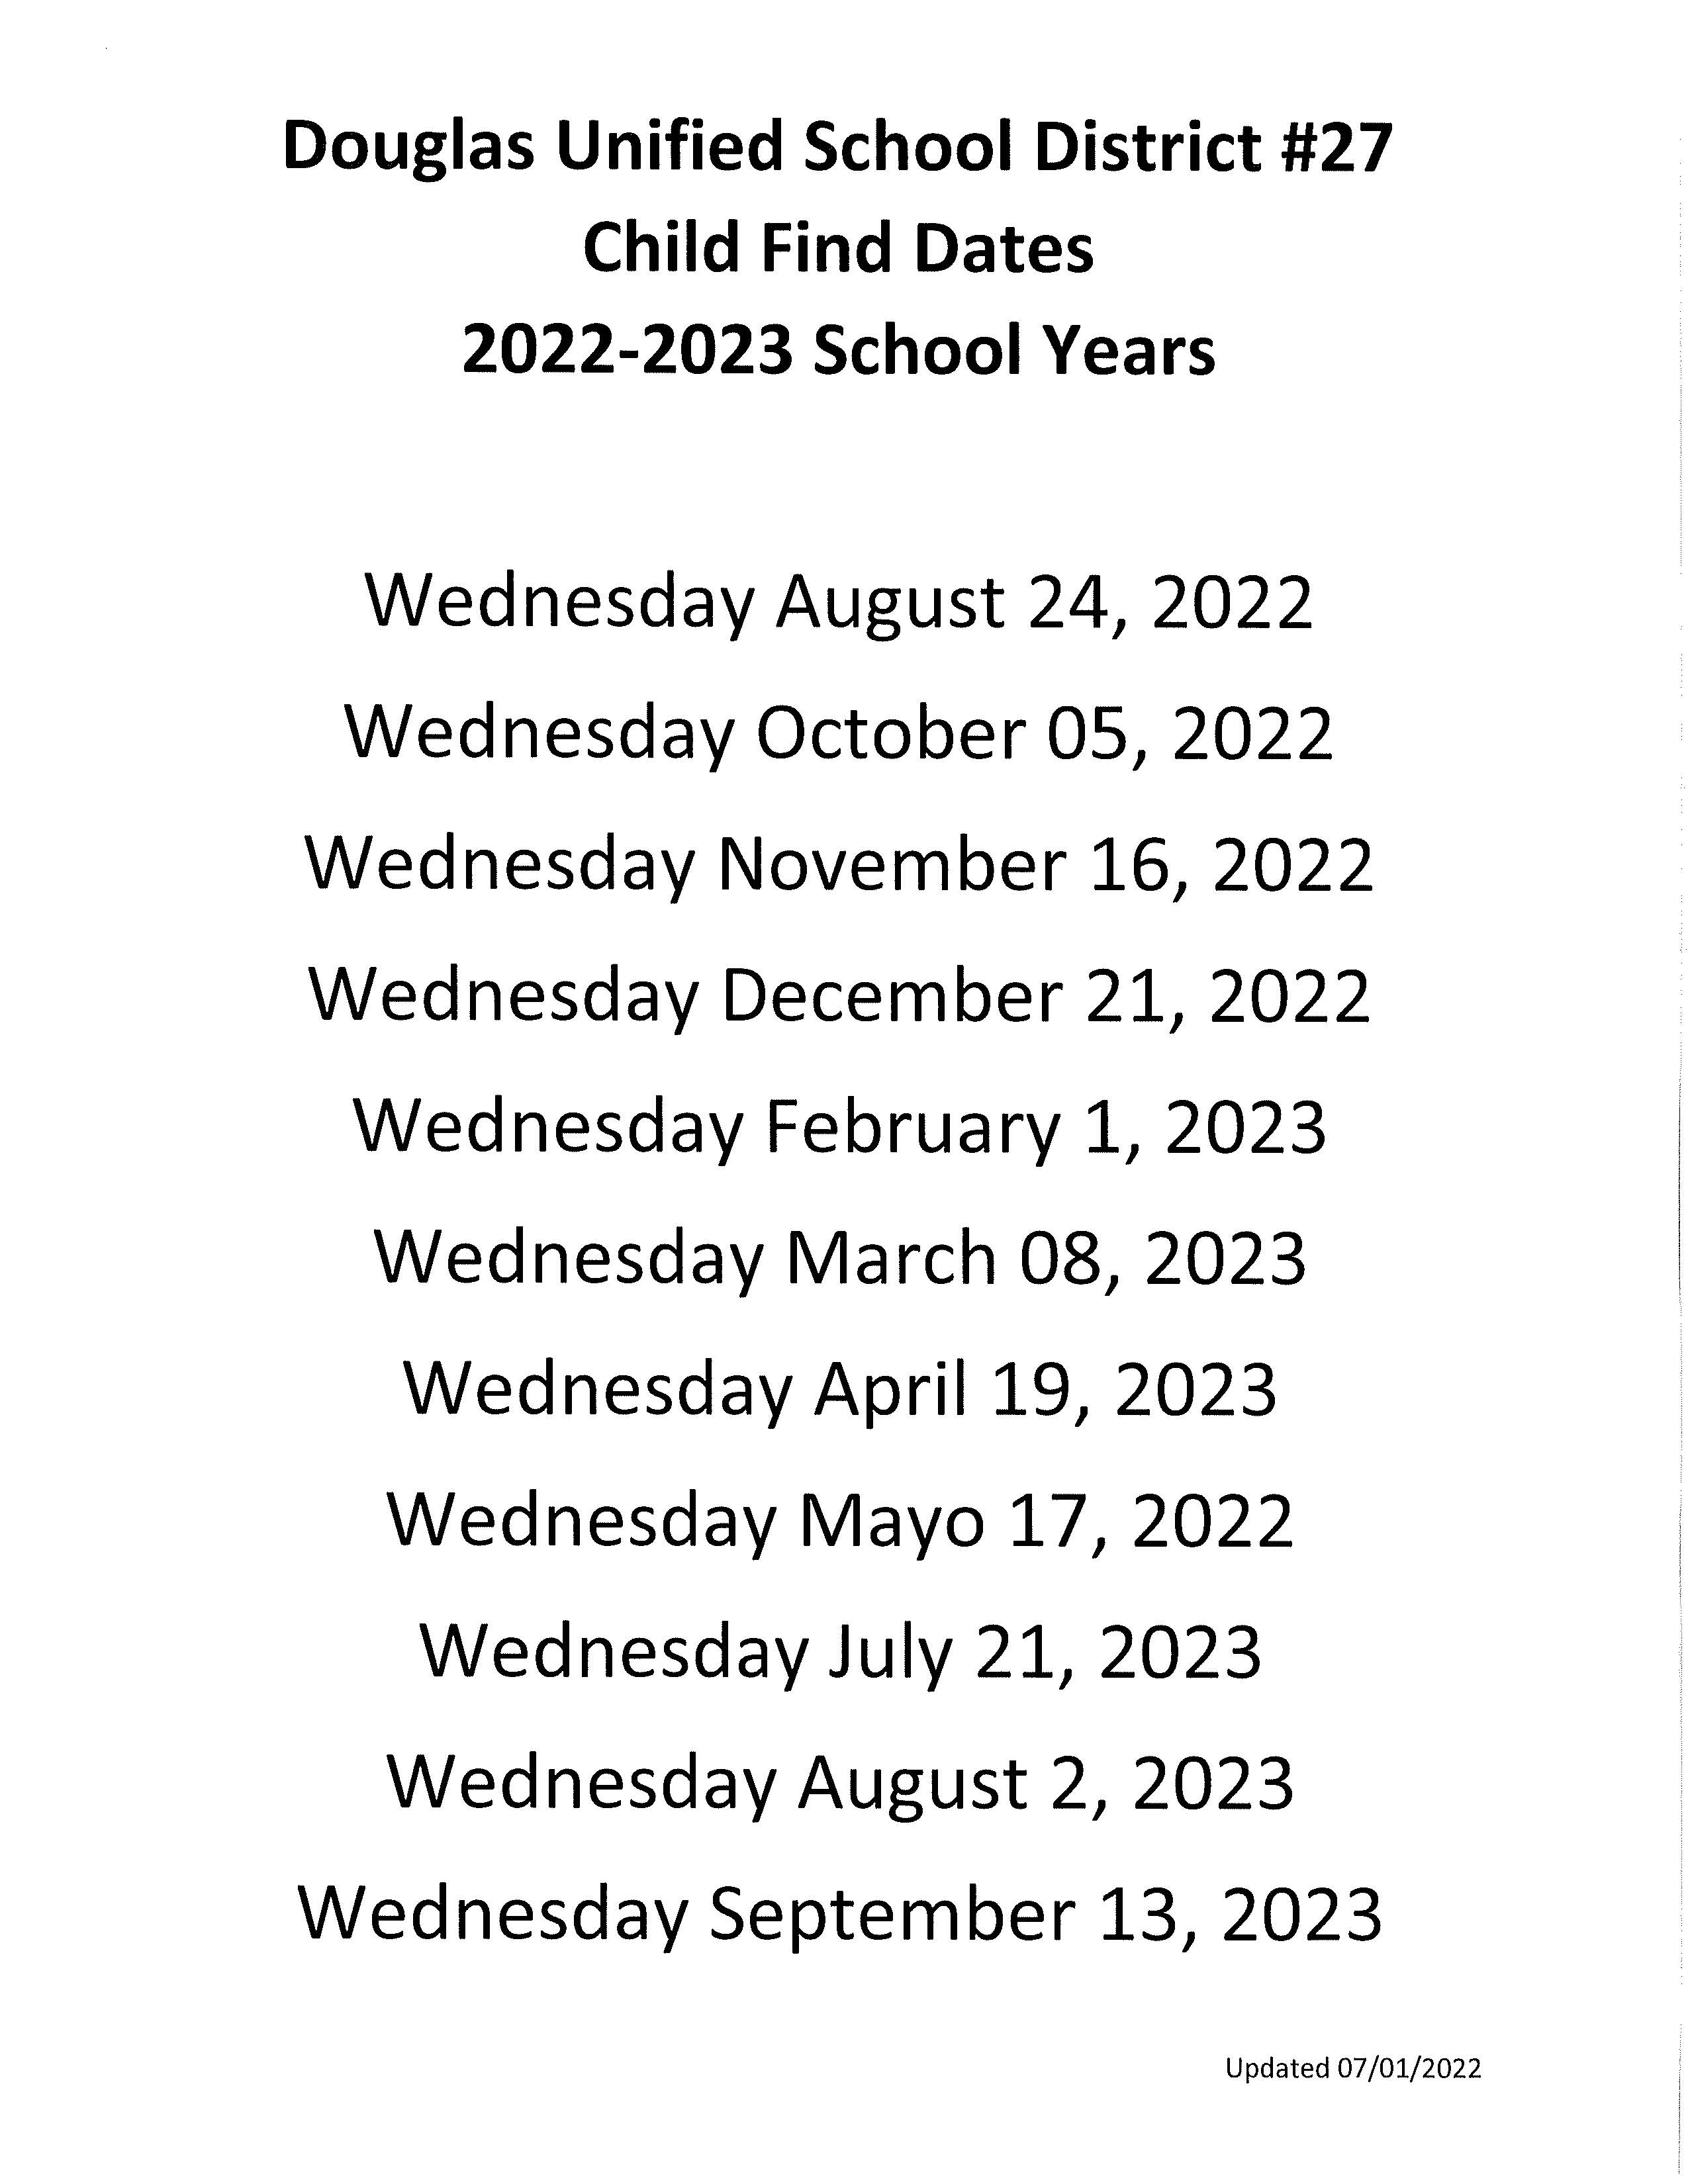 22-23 Child Find Dates